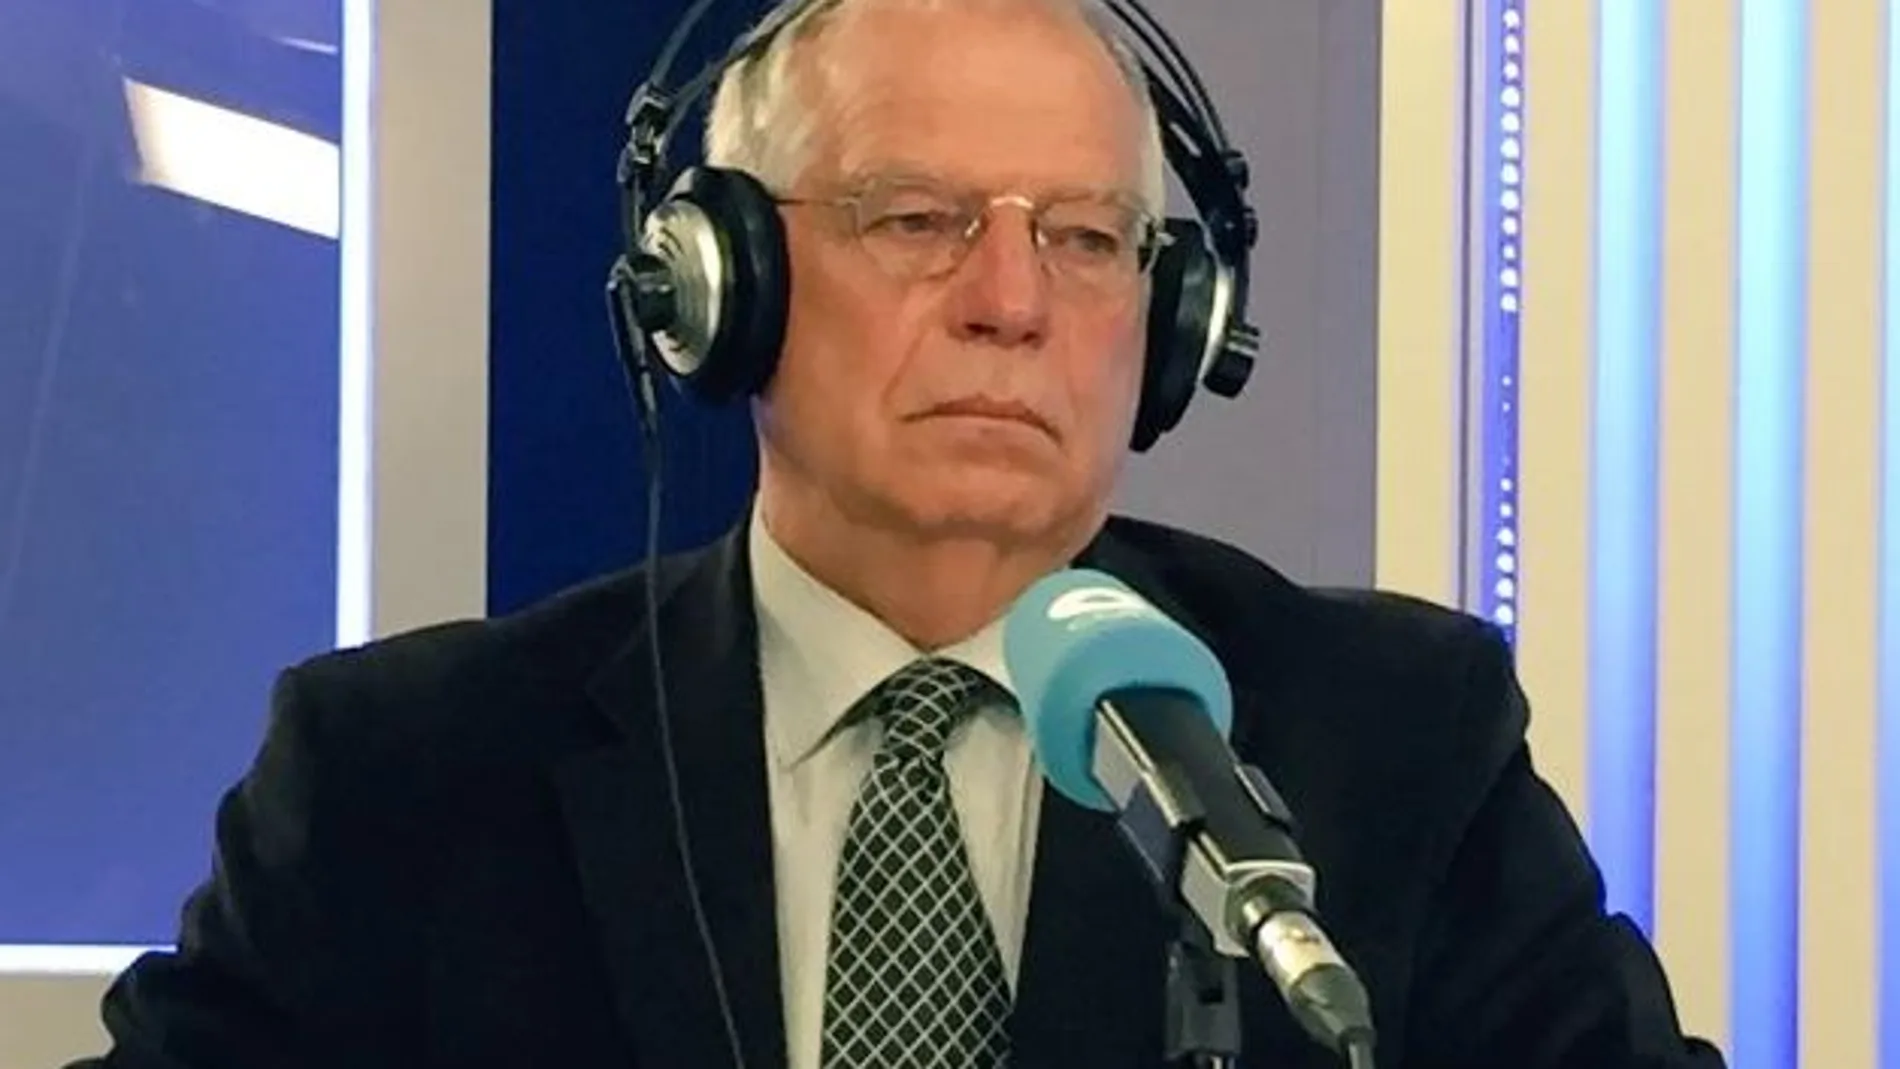 El ex ministro socialista Josep Borrell